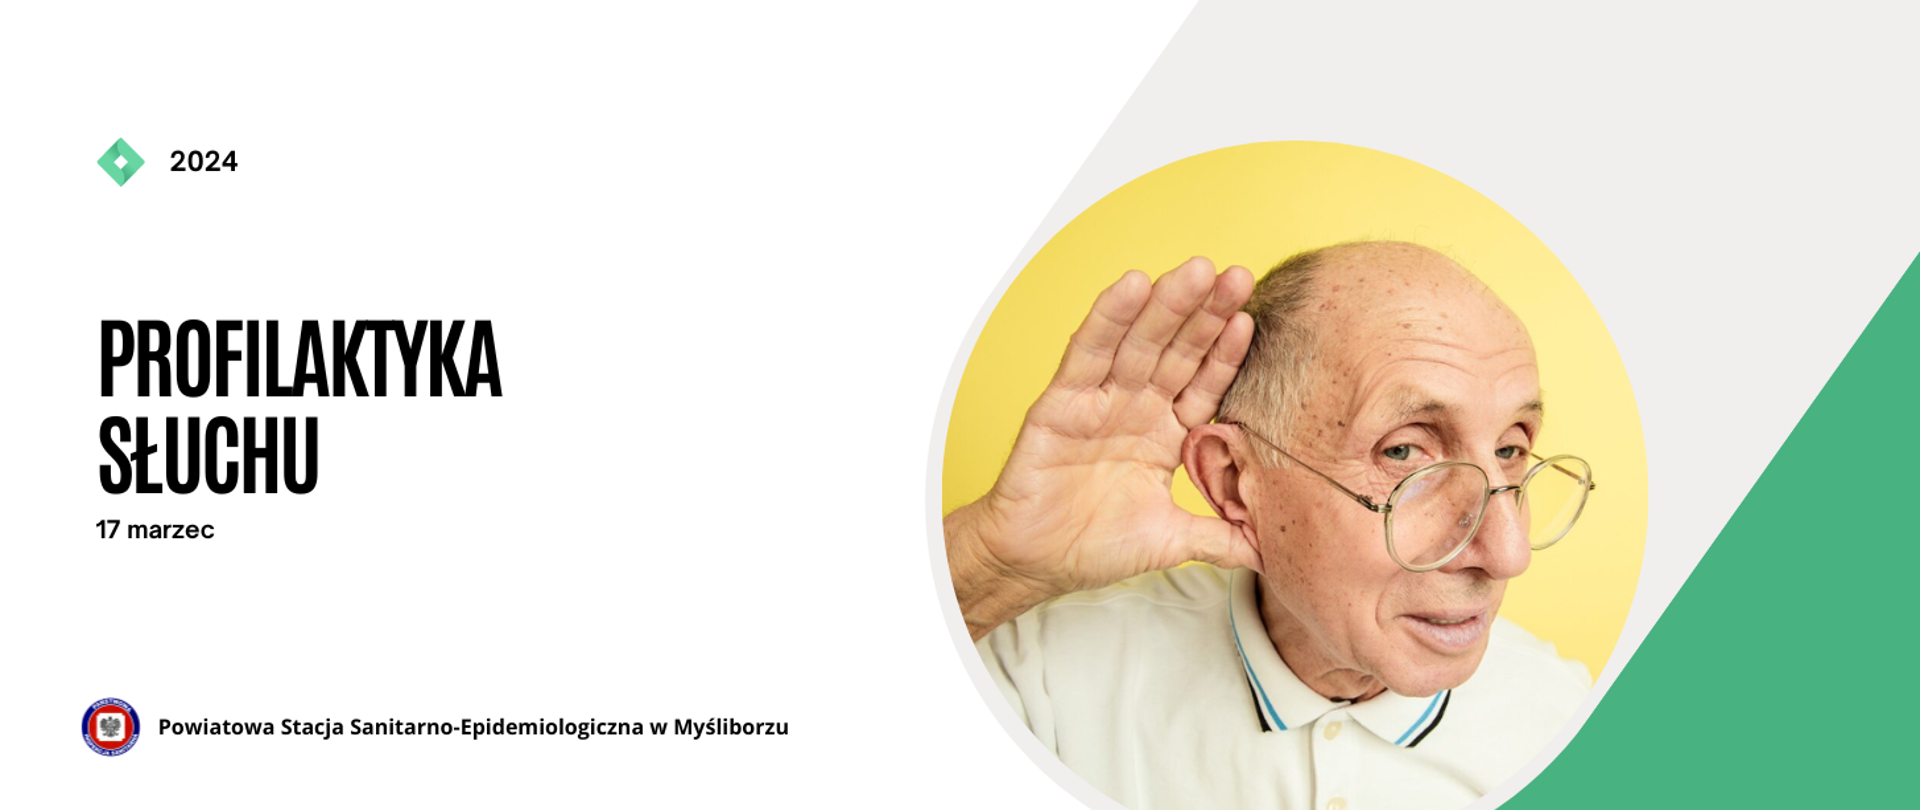 Baner profilaktyka słuchu